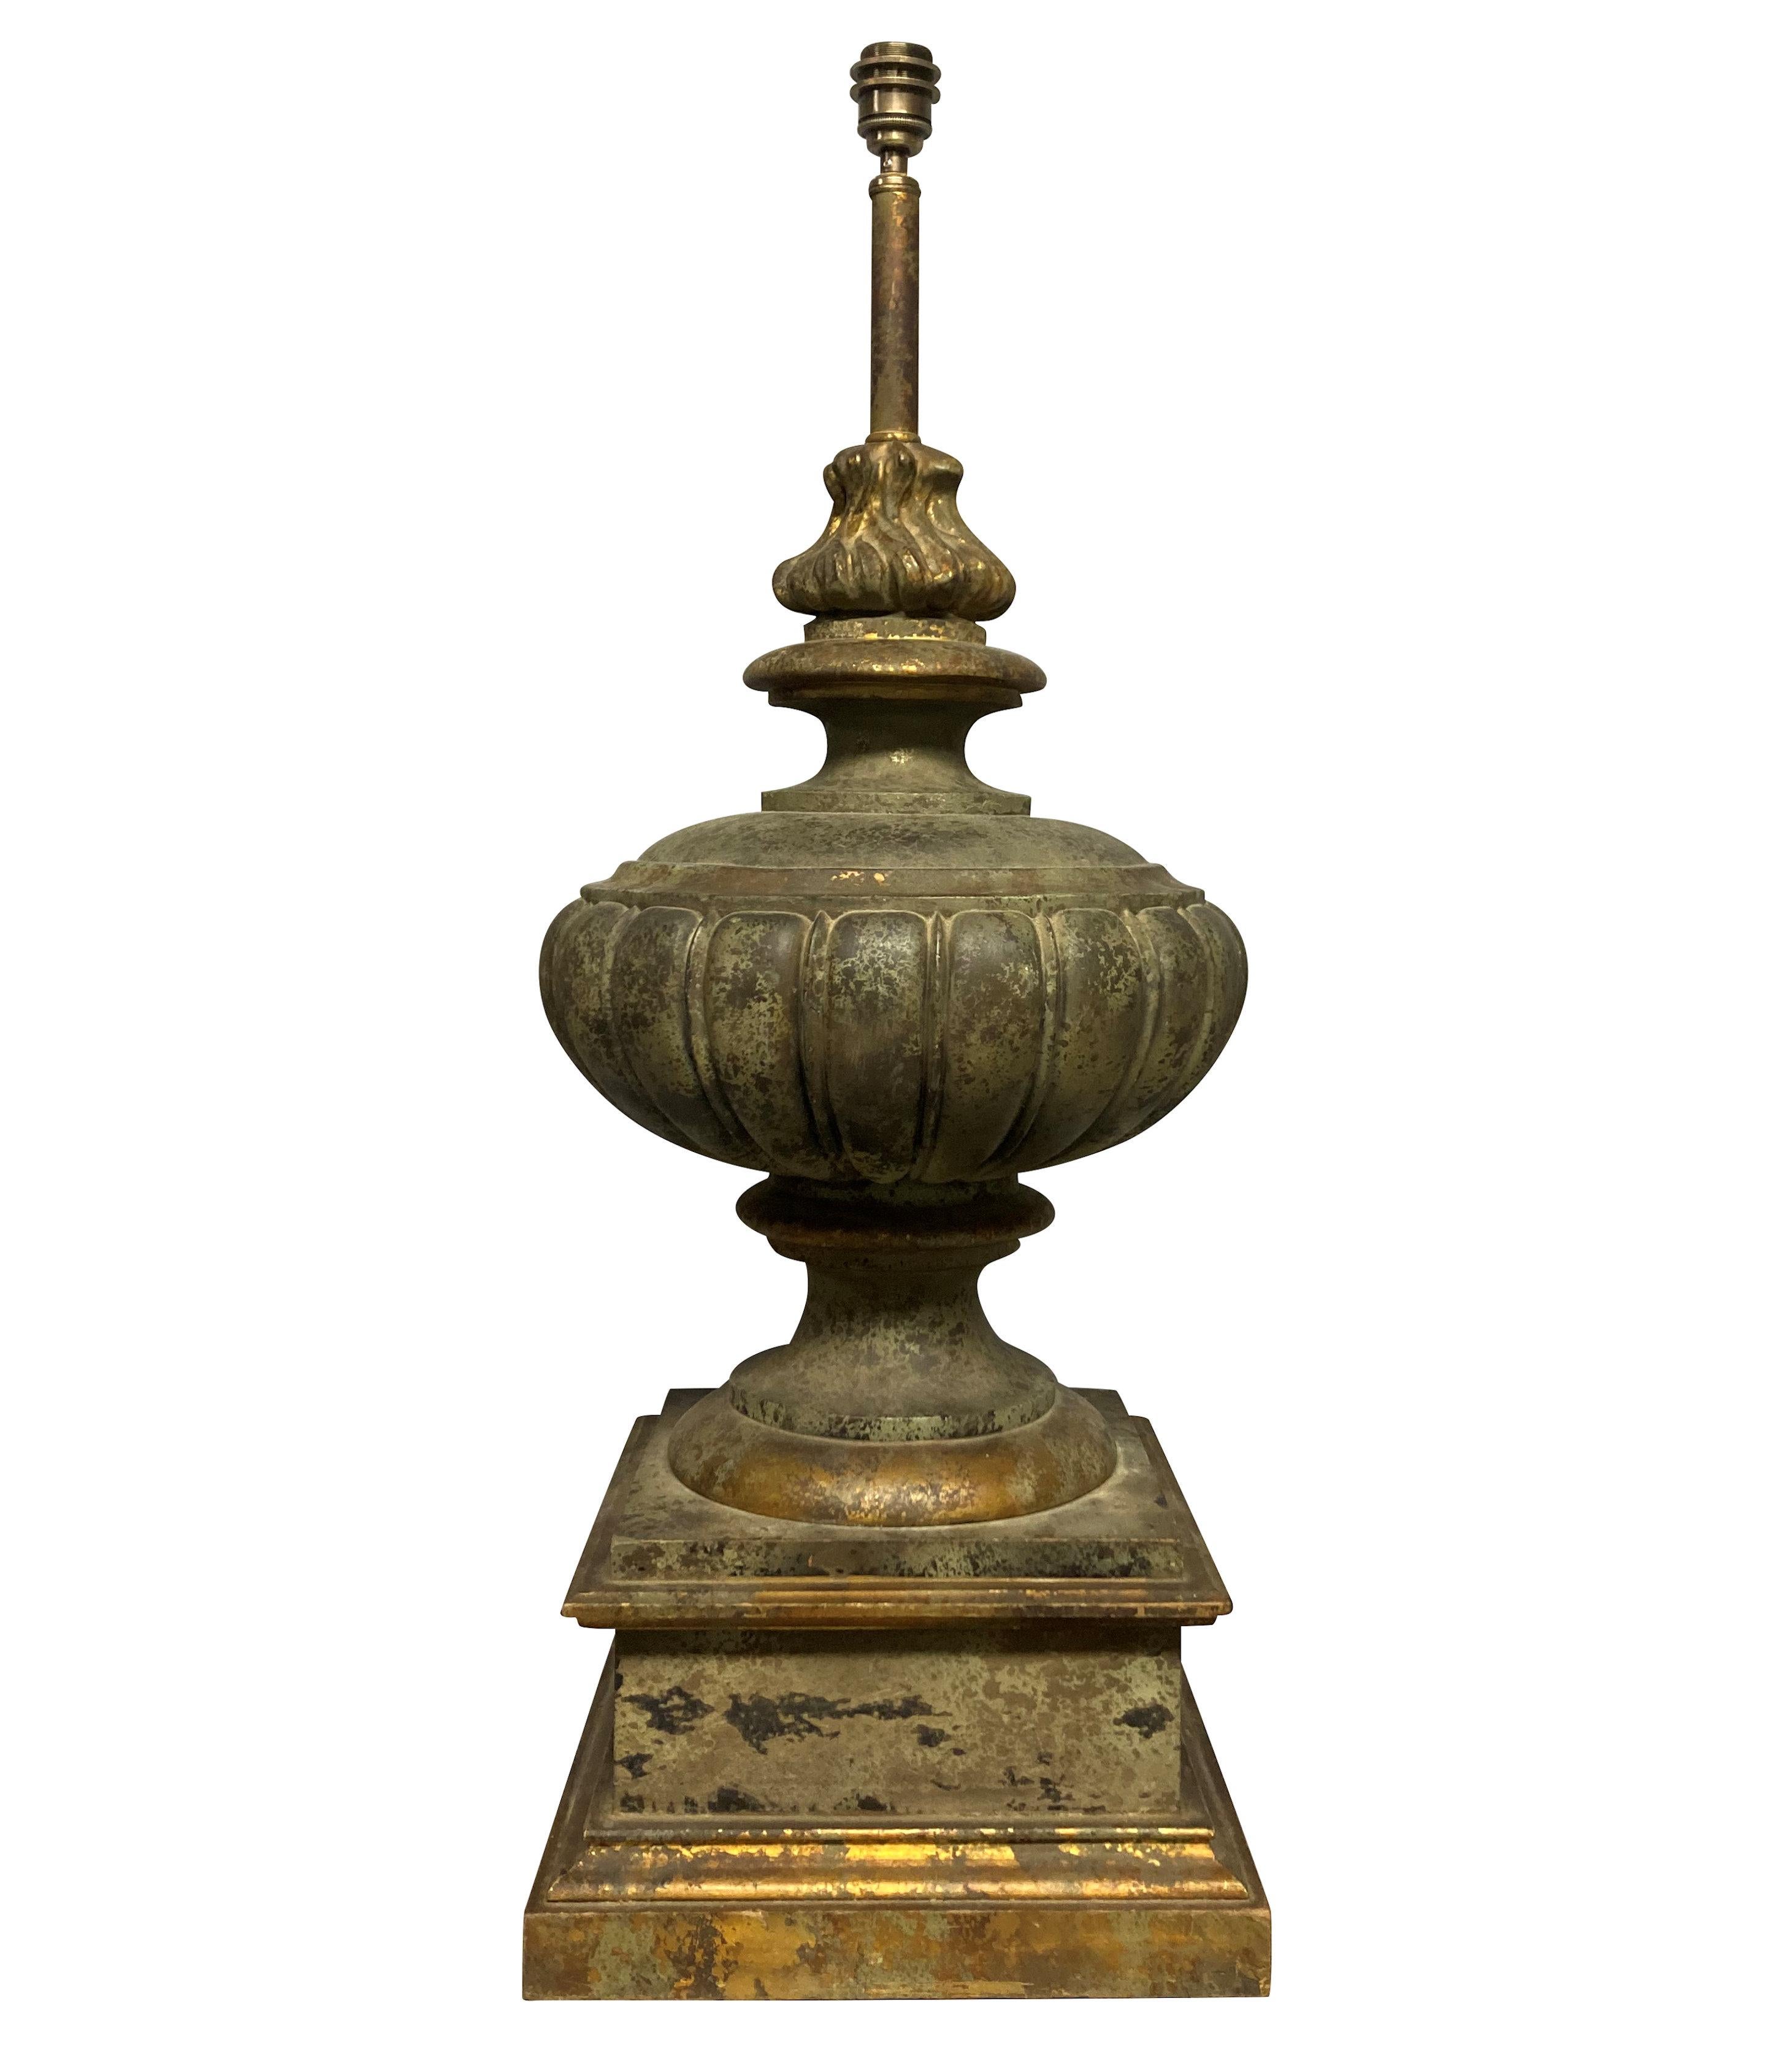 Paire de grandes lampes classiques anglaises en faux bronze, sur socle, avec fleurons en forme de flamme. Peint et doré.